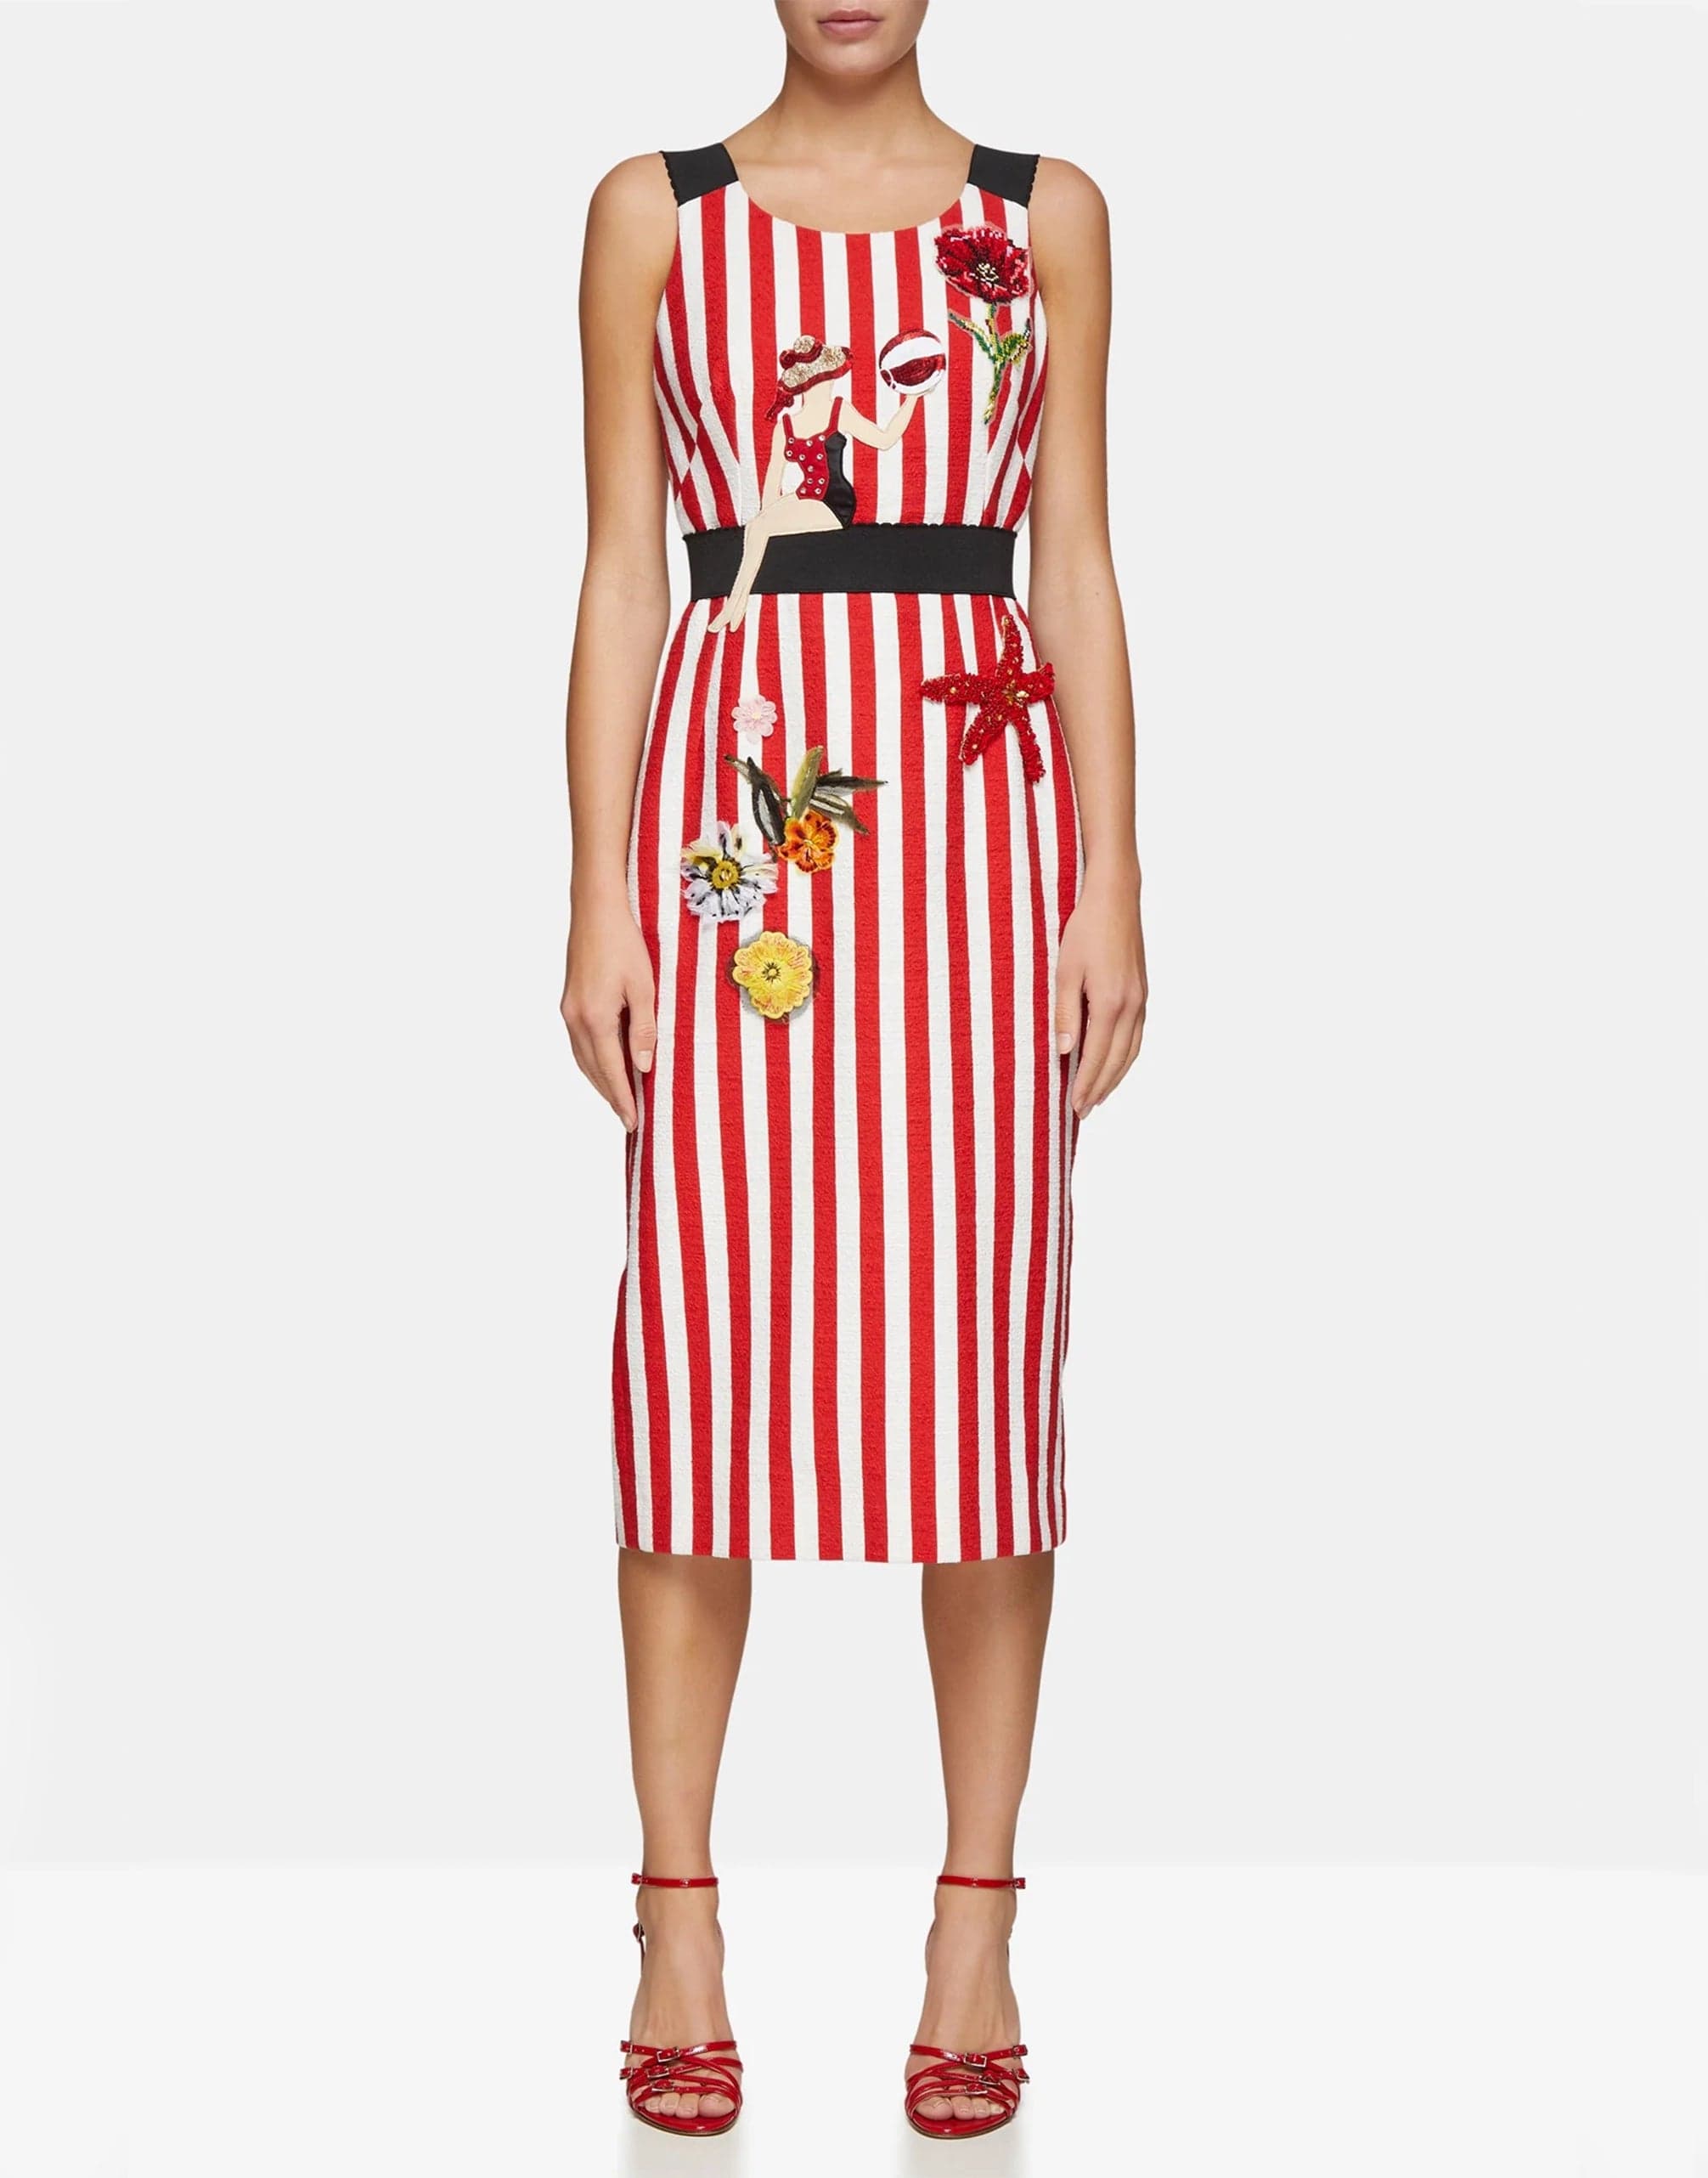 Dolce & Gabbana Embellished Striped Dress